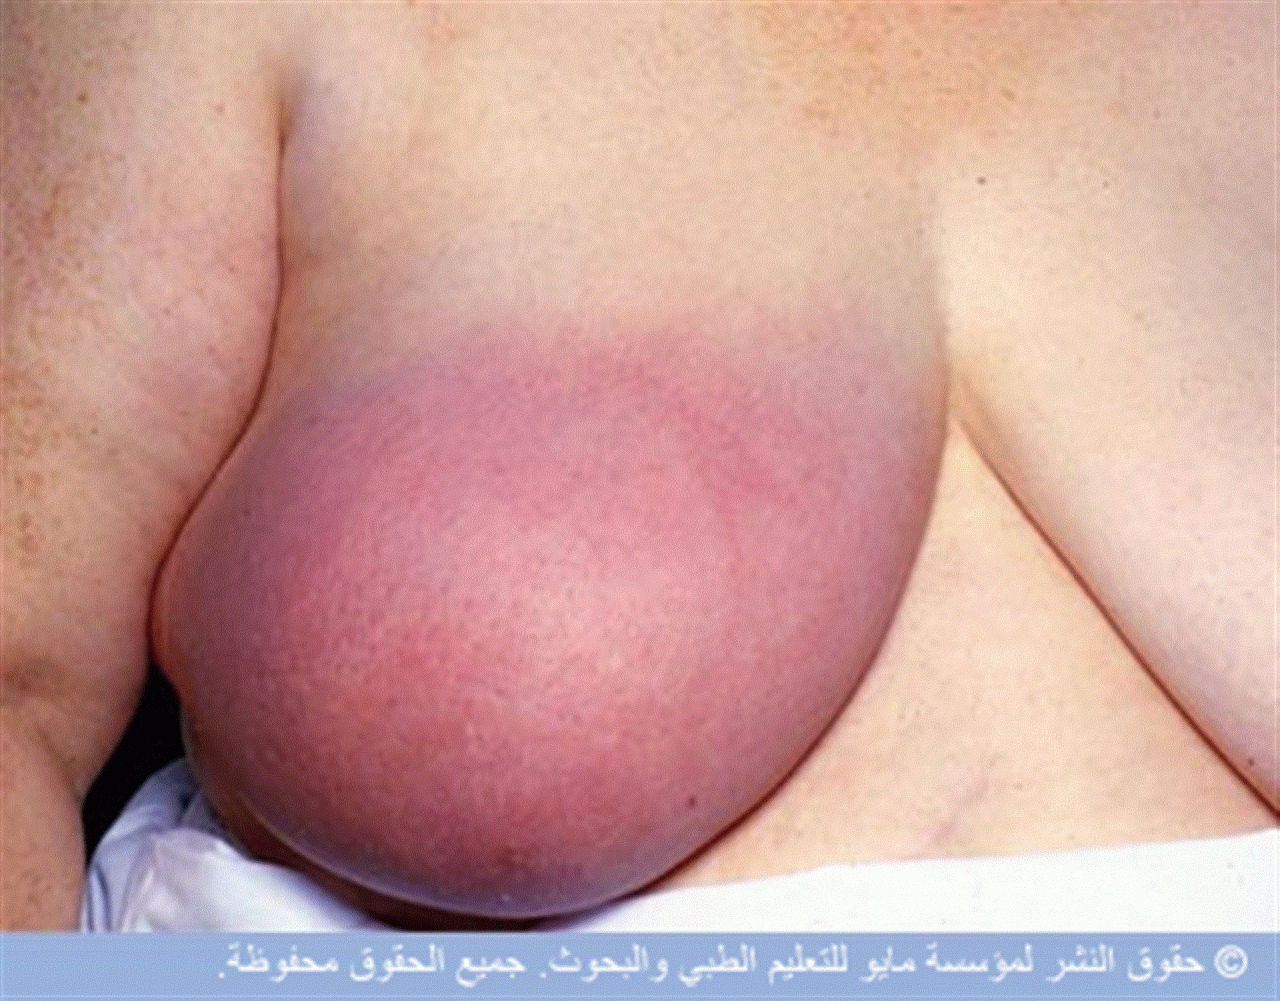 причины воспаления груди у женщин фото 71